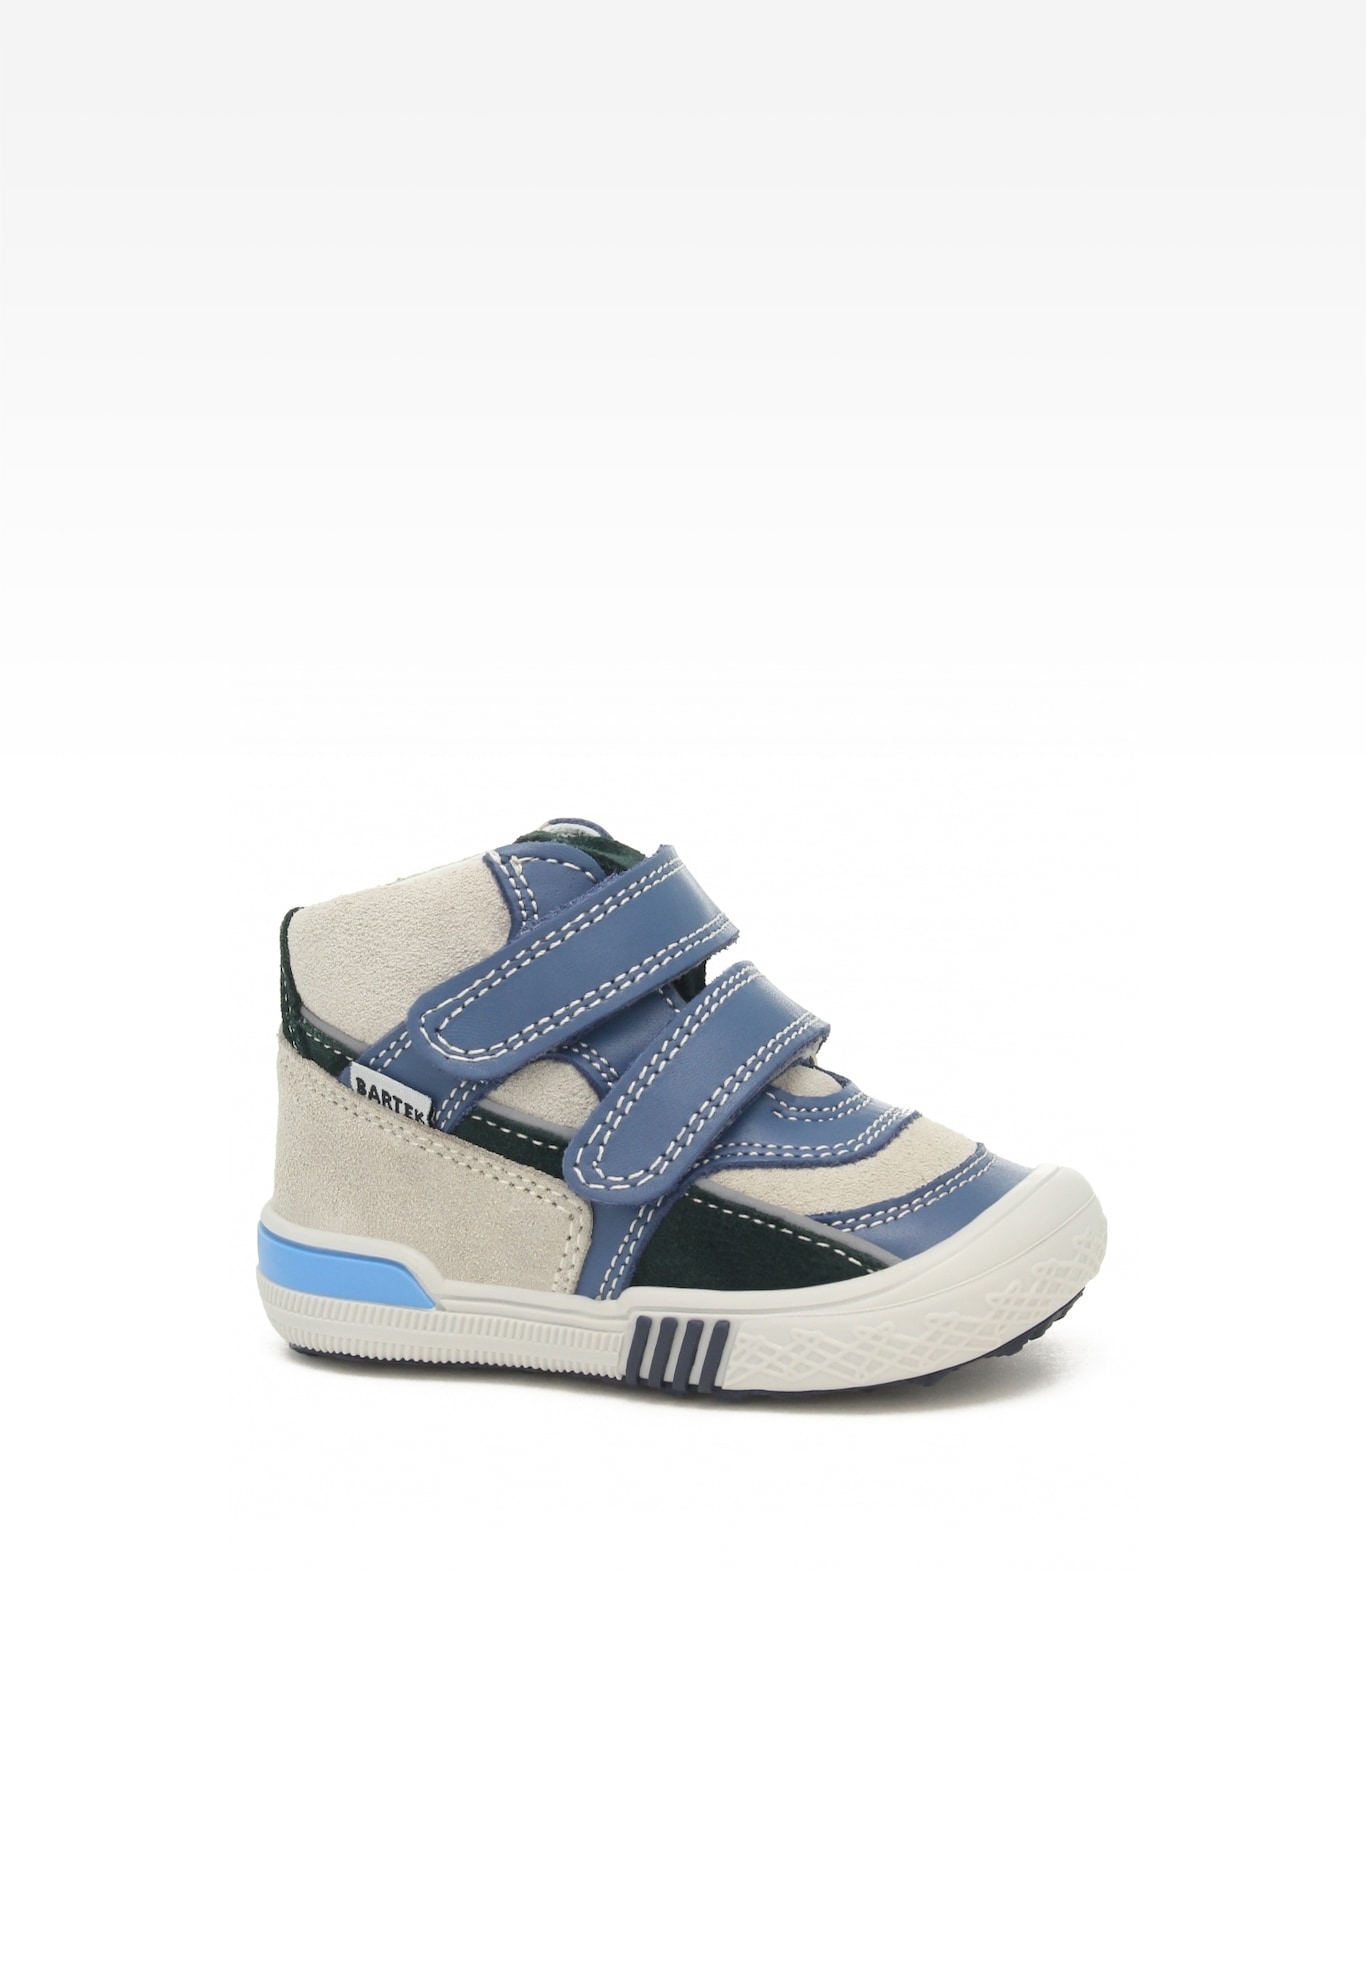 Sneakers BARTEK 91756-023, niebiesko-beżowy